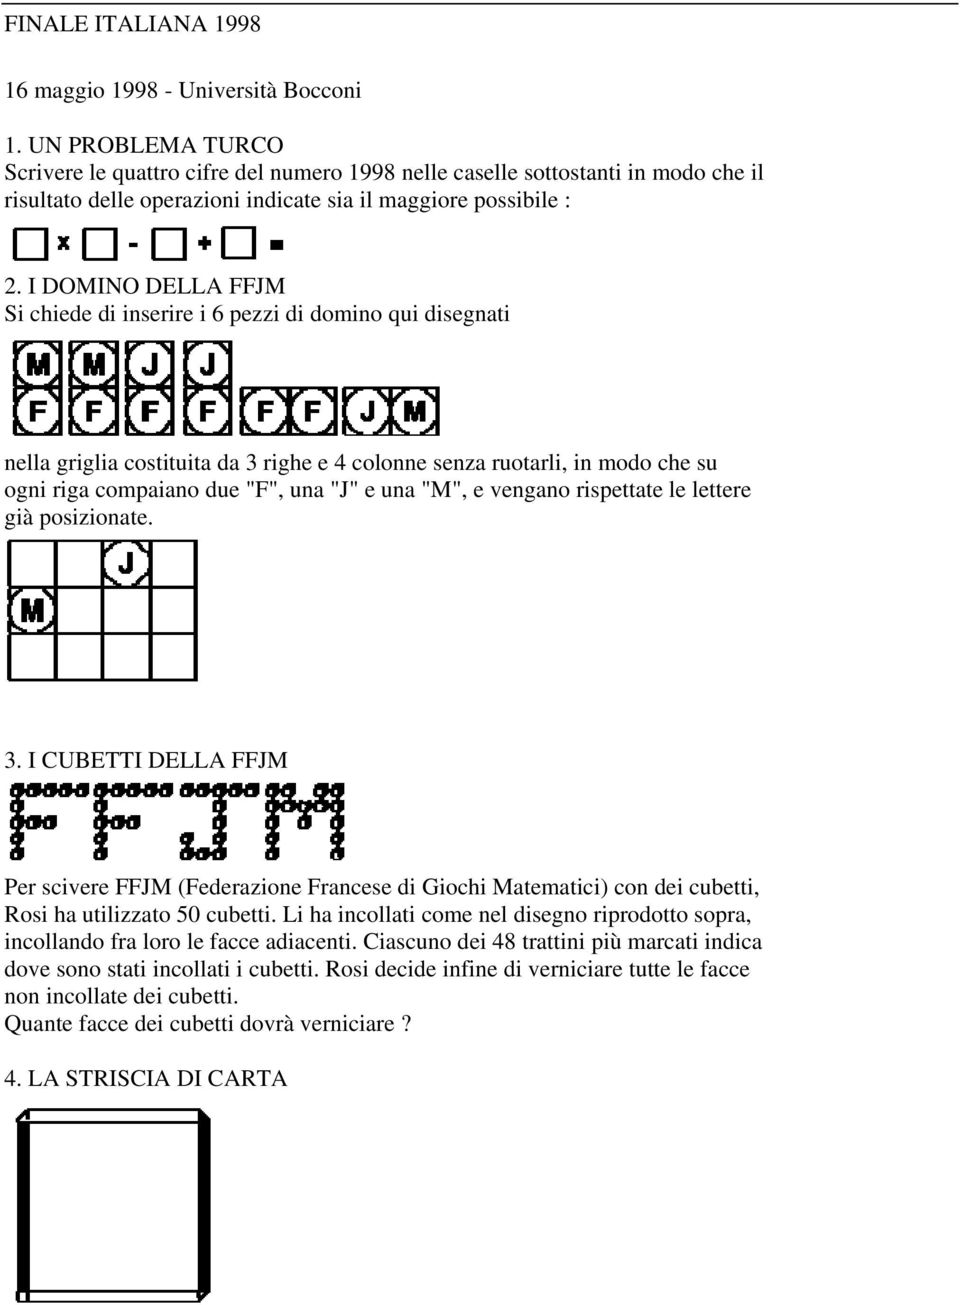 I DOMINO DELLA FFJM Si chiede di inserire i 6 pezzi di domino qui disegnati nella griglia costituita da 3 righe e 4 colonne senza ruotarli, in modo che su ogni riga compaiano due "F", una "J" e una